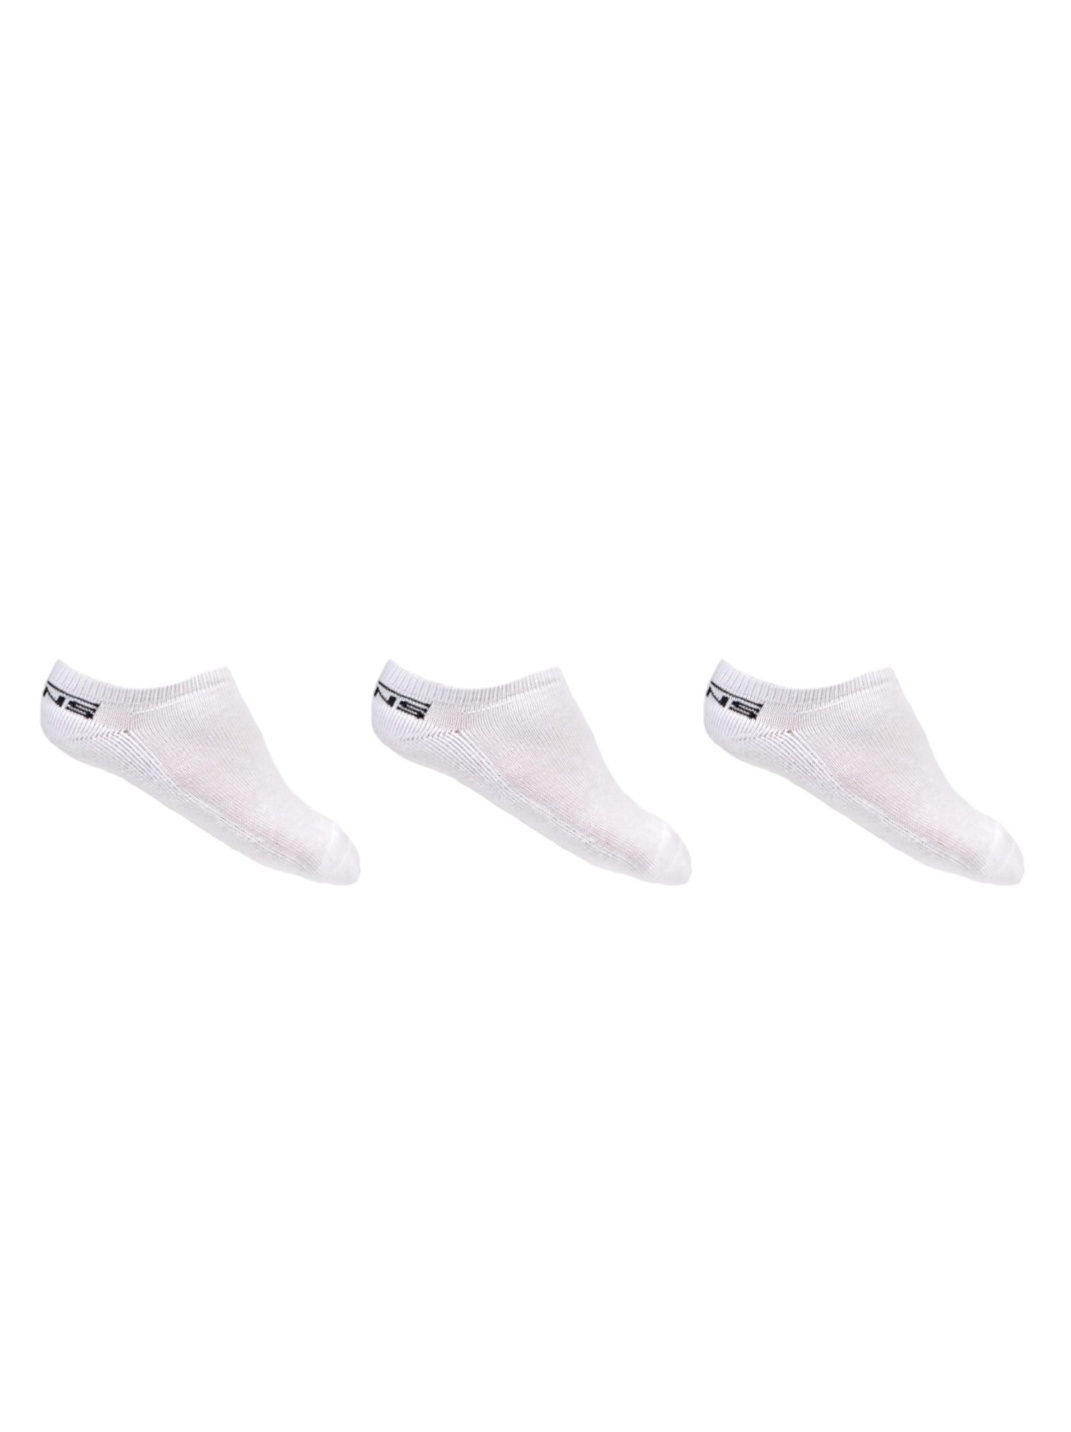 Vans CLASSIC LOW 3PK white kotníkové ponožky - 10-13 bílá